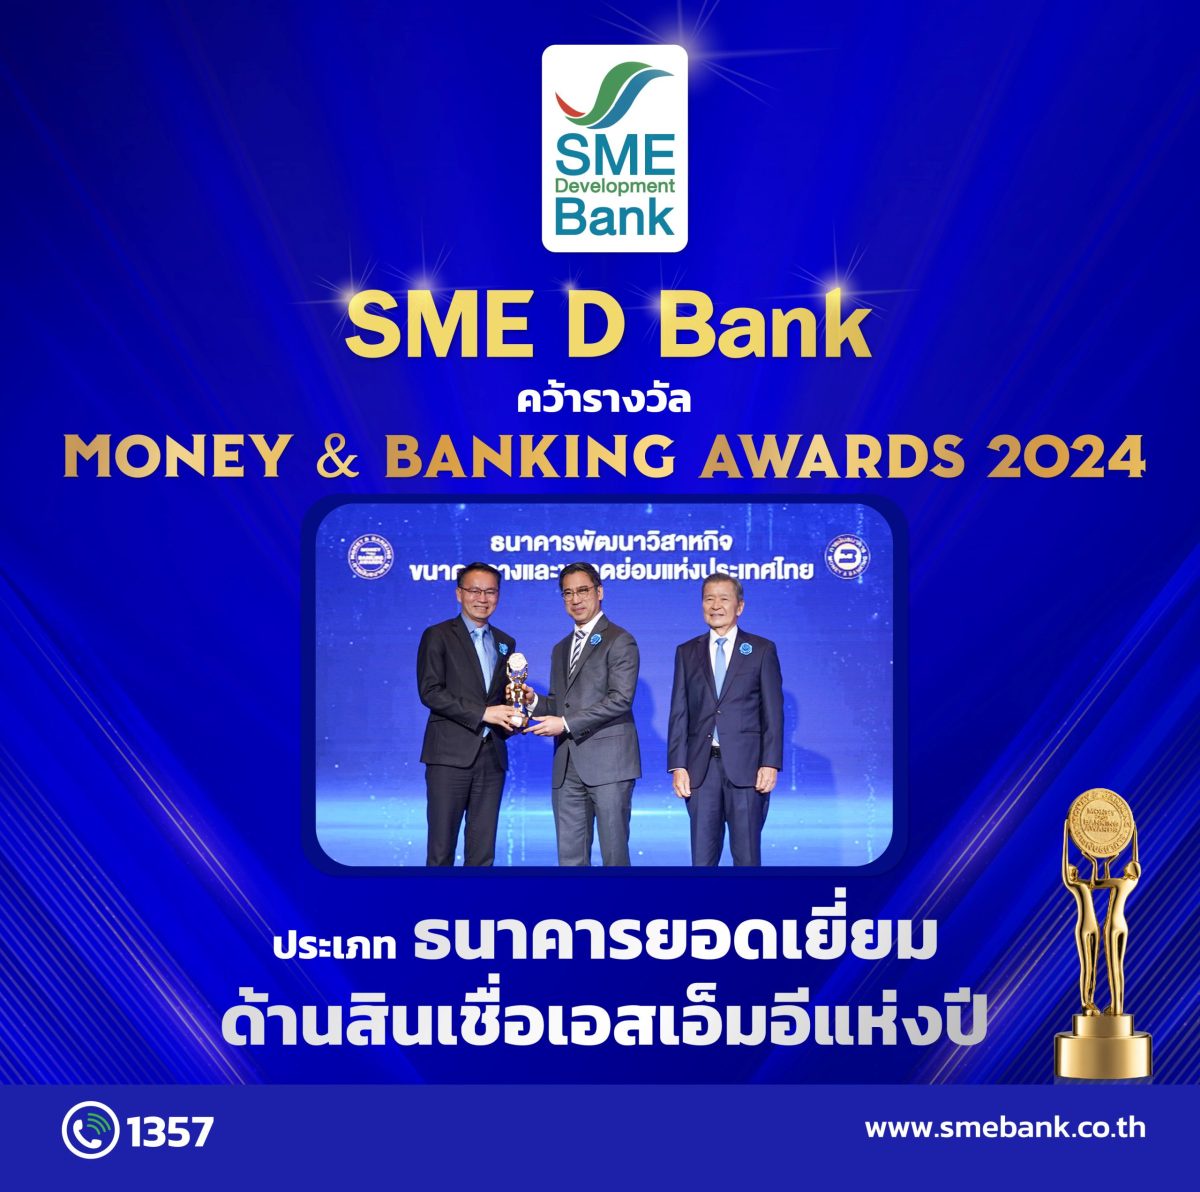 SME D Bank ชนะใจเอสเอ็มอี รับรางวัล Money Banking Awards 2024 ประเภท 'ธนาคารยอดเยี่ยมด้านสินเชื่อเอสเอ็มอีแห่งปี 2567'ต่อเนื่อง 2